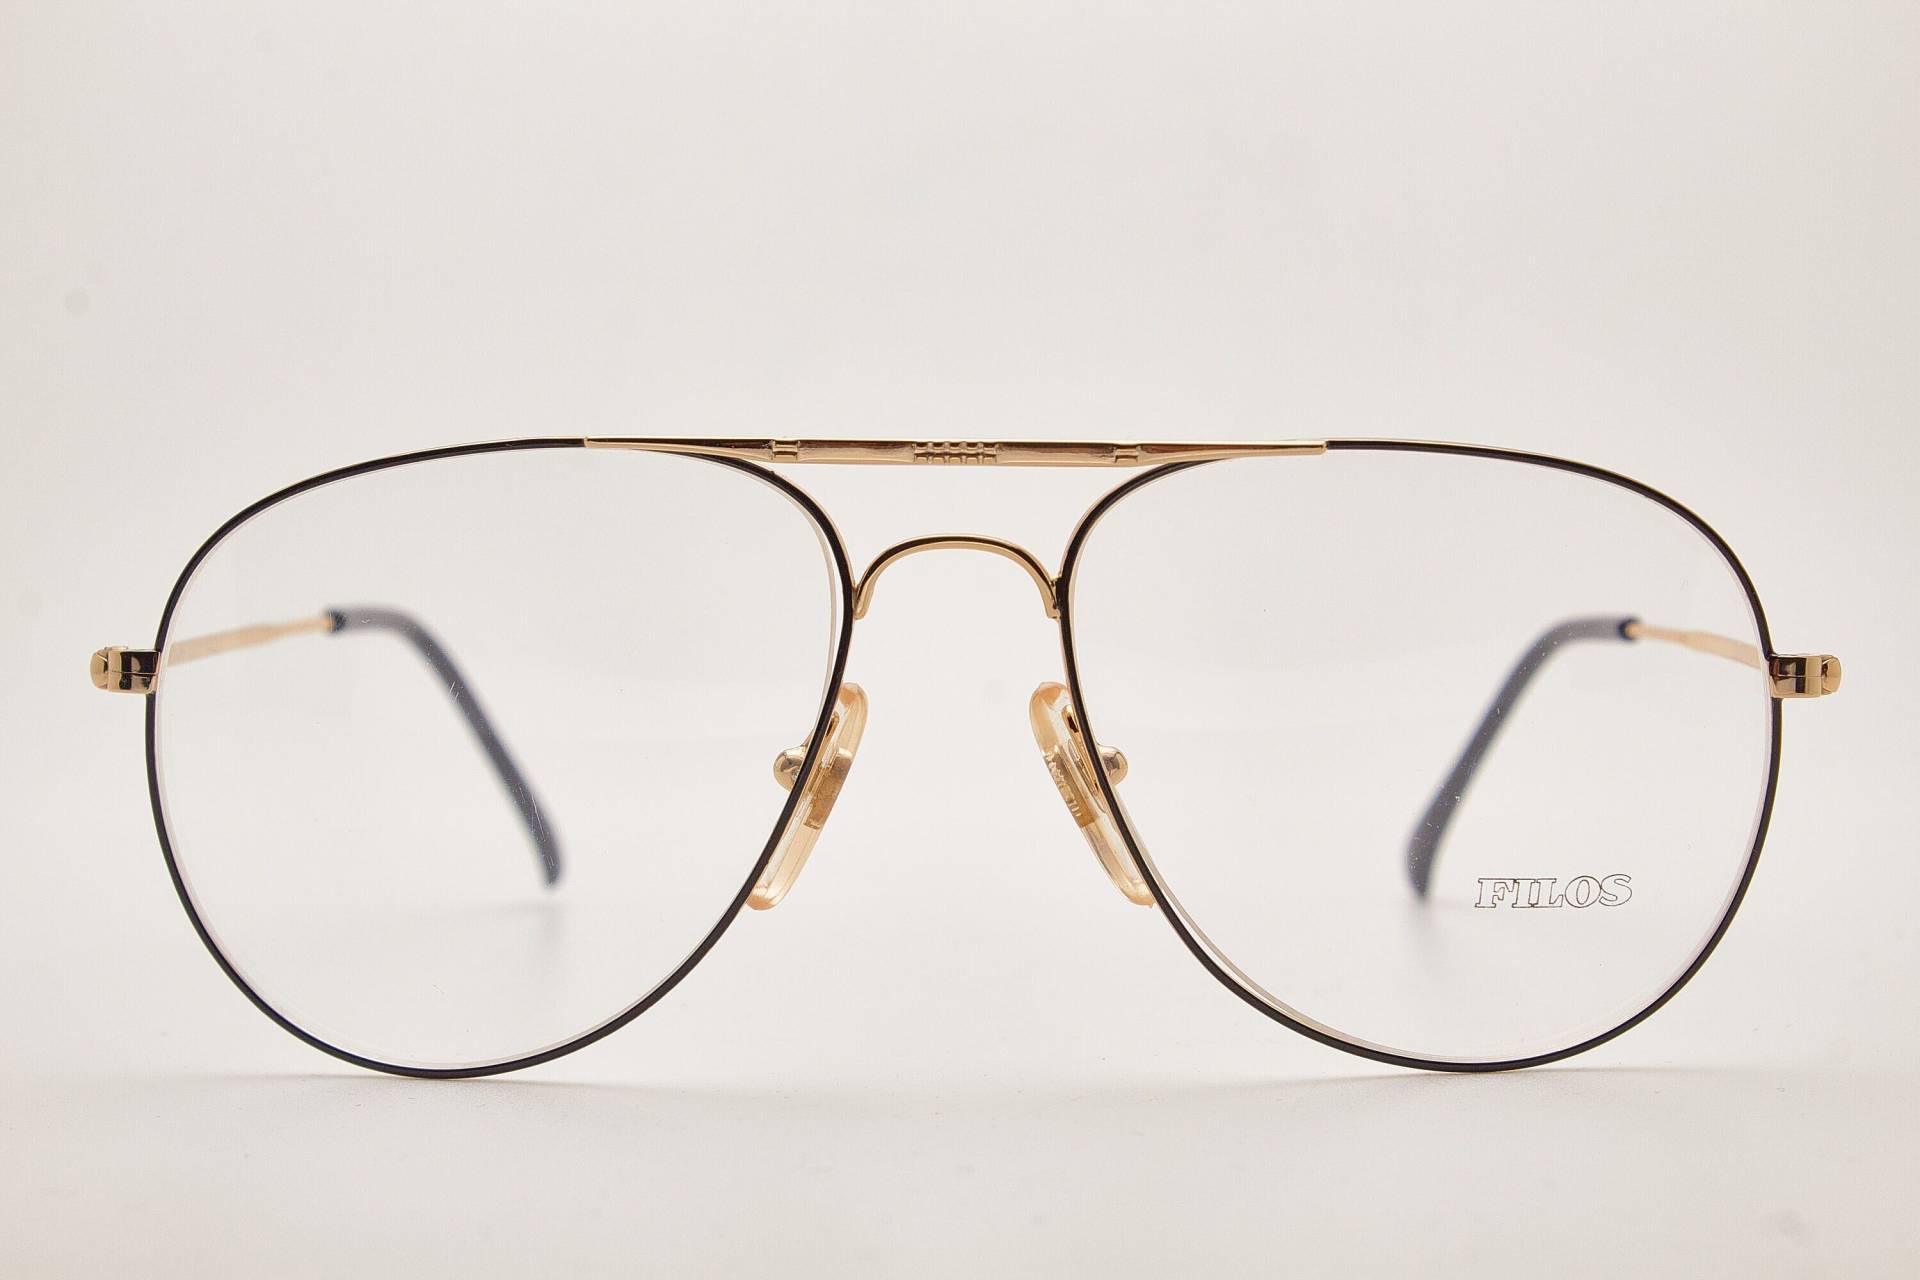 1980Er Brille/Men's Vintage Eyewear Filos 5207 Black Gold Metal Frame/Hipster Brille/ Piloten Sonnenbrille/Oversize Sonnenbrille/Fliegerbrille von VintageGlassesVault